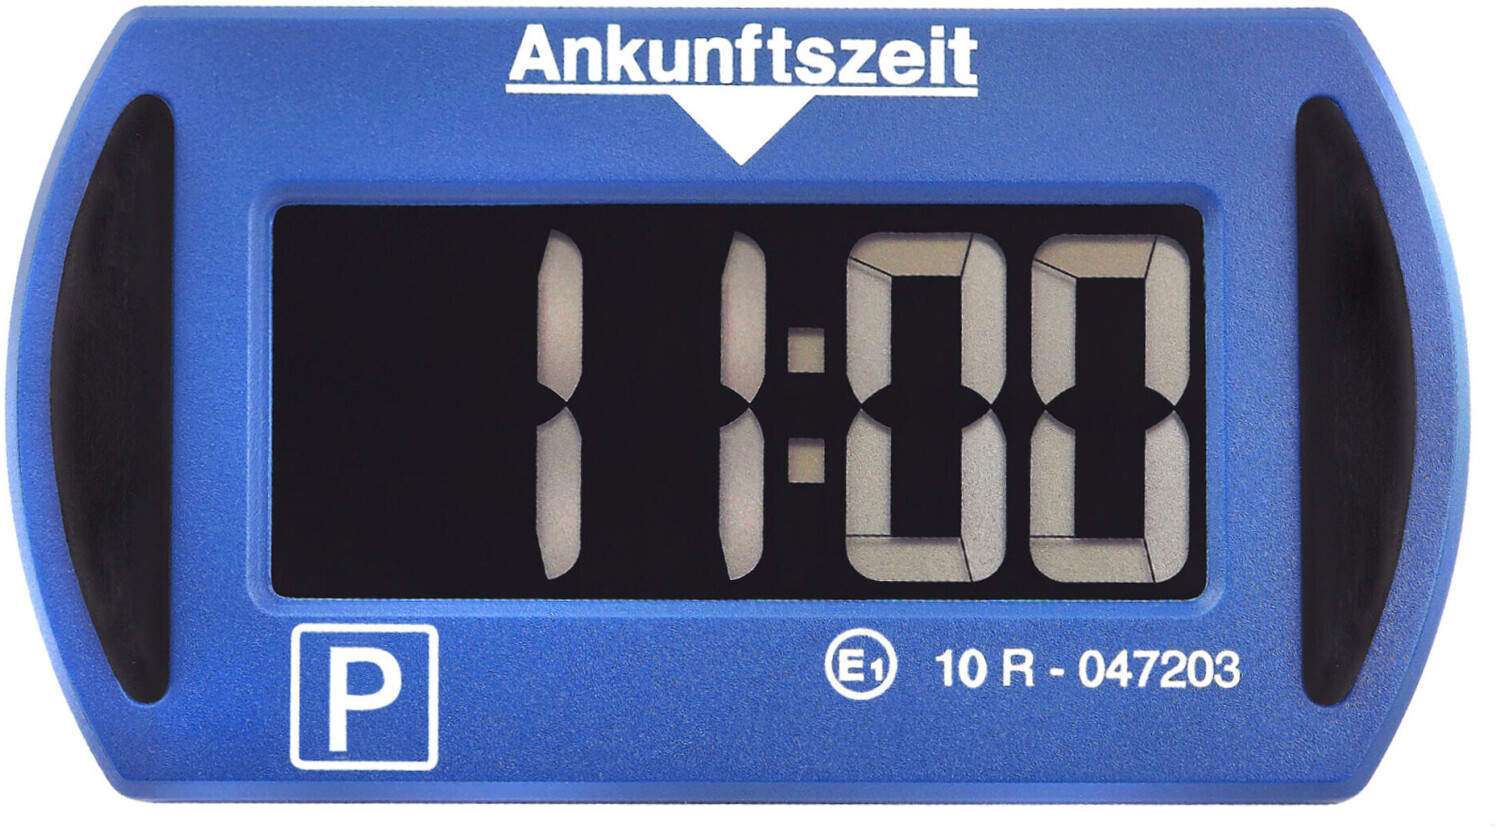 Needit Parkscheibe Park Mini 3011, elektronisch, StVO zugelassen